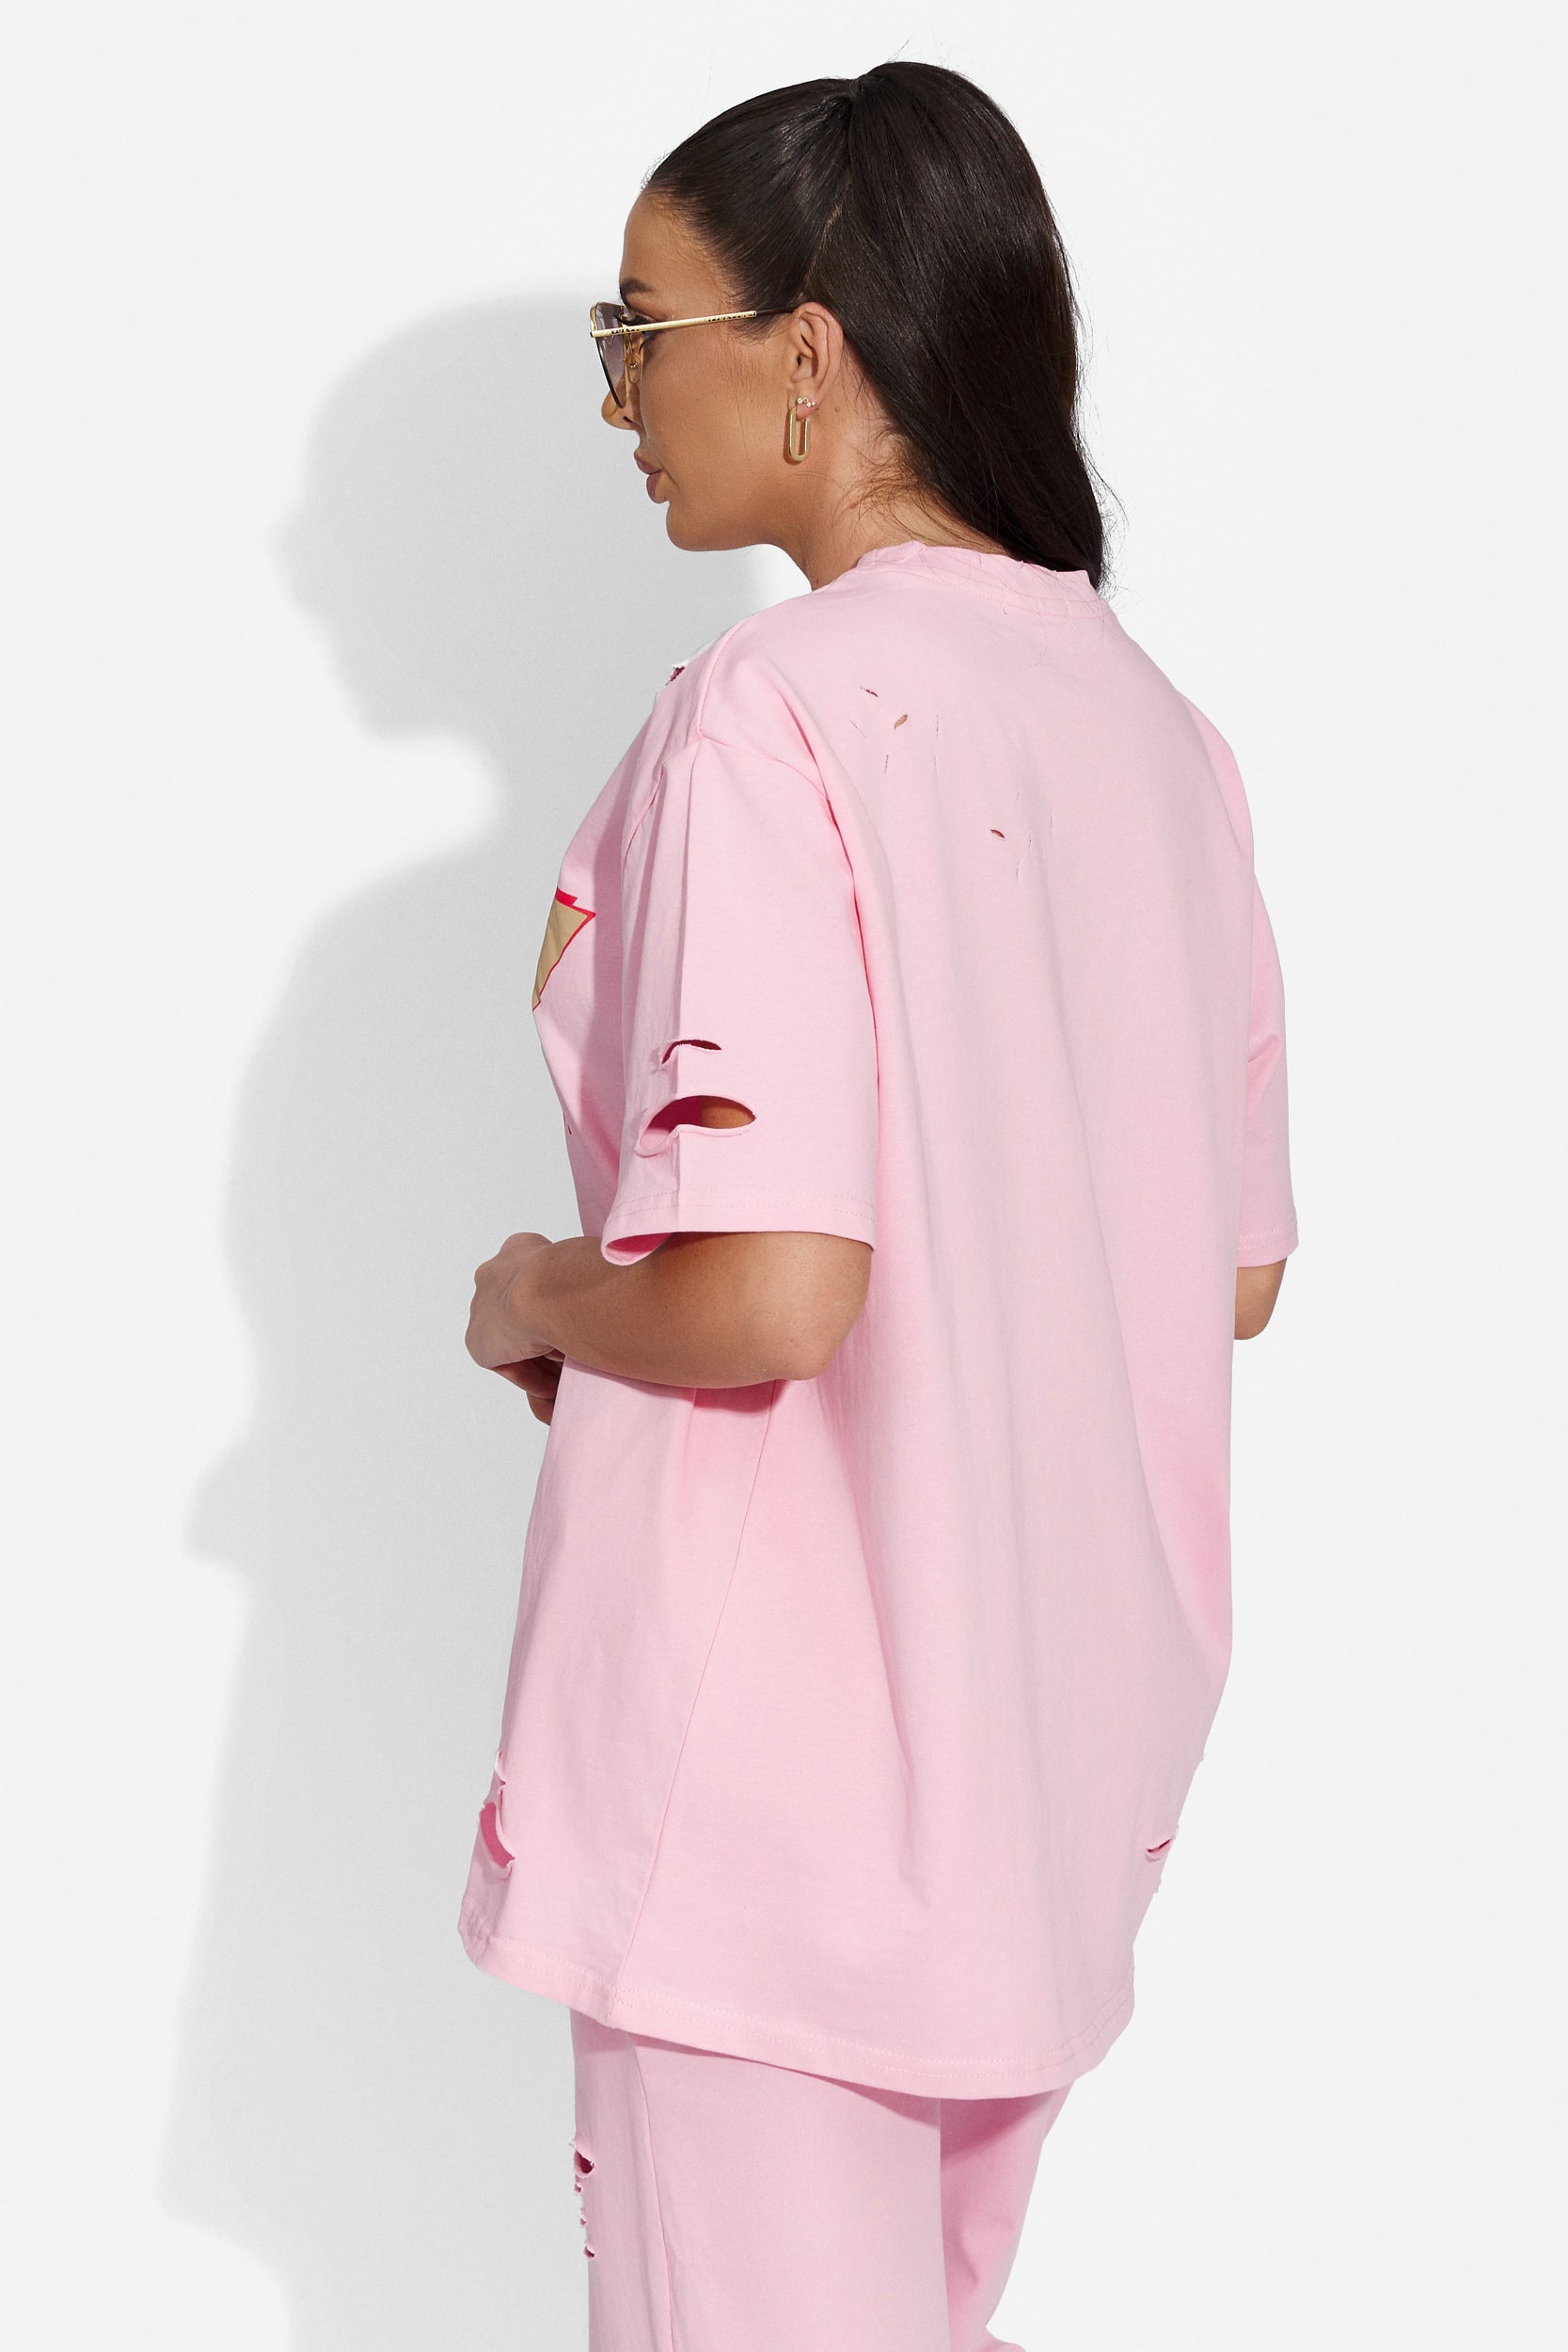 Metima Bogas alkalmi rózsaszín női póló